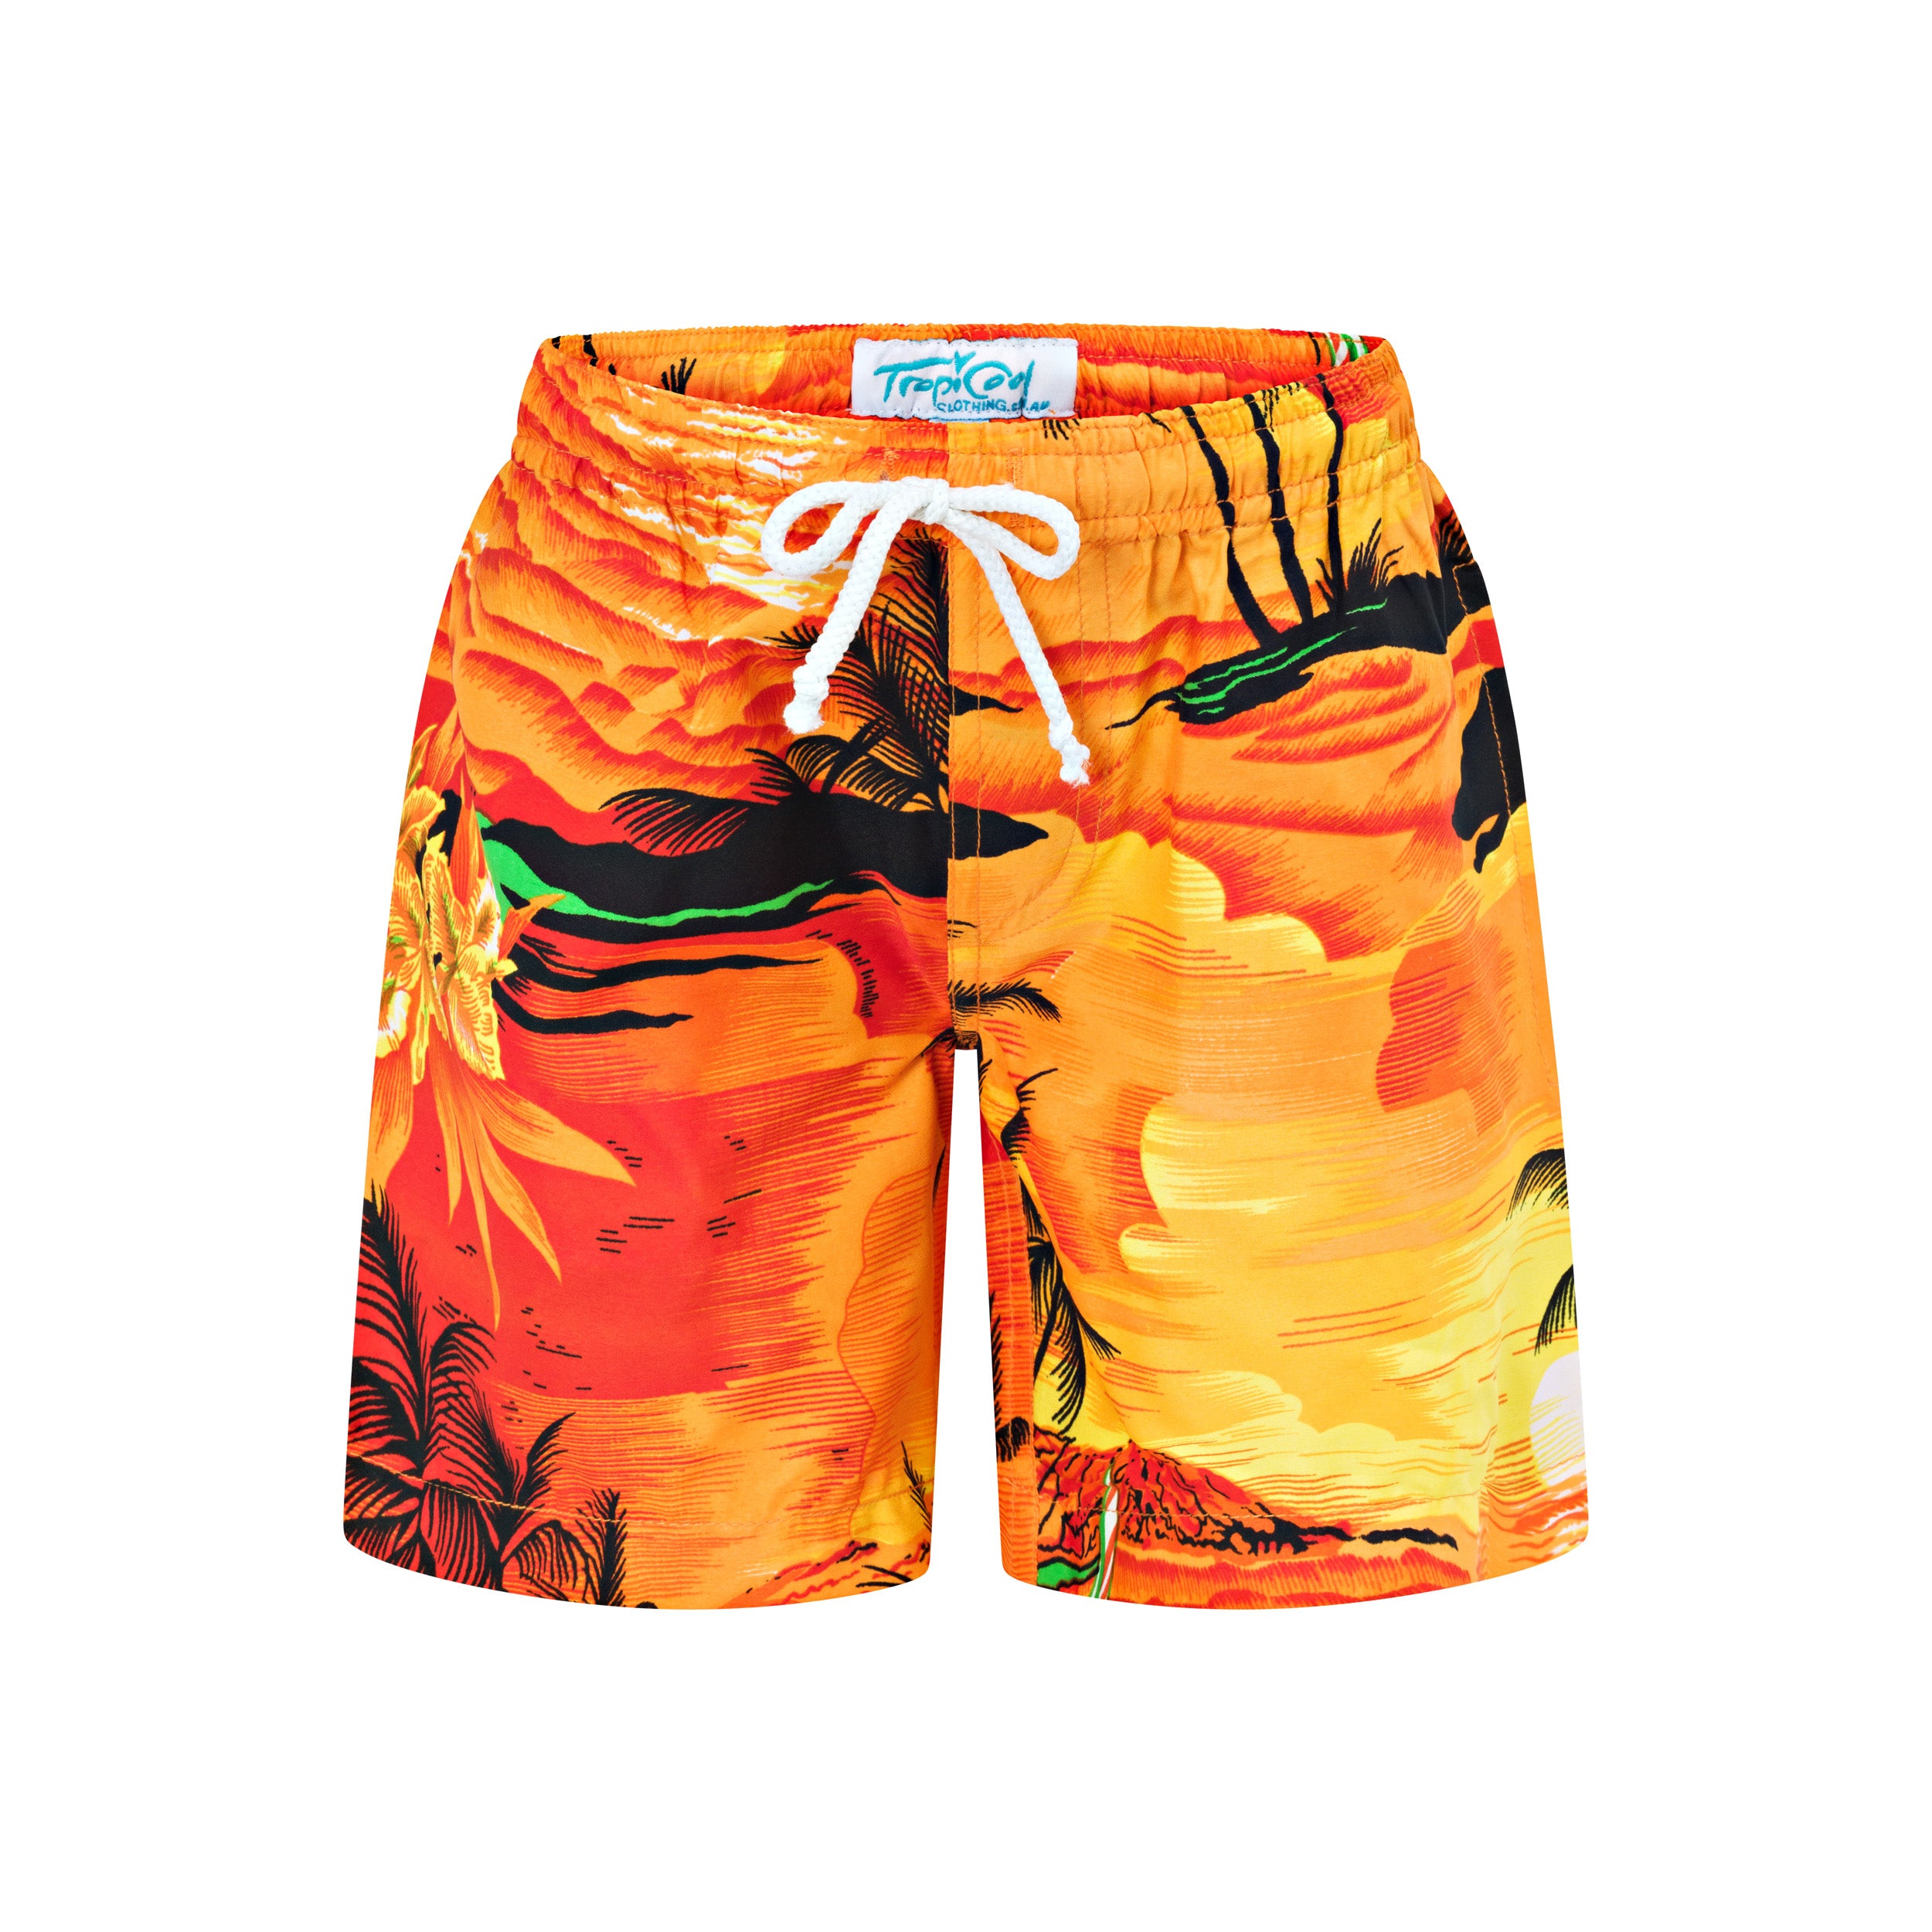 Sunset Orange Kids Shorts